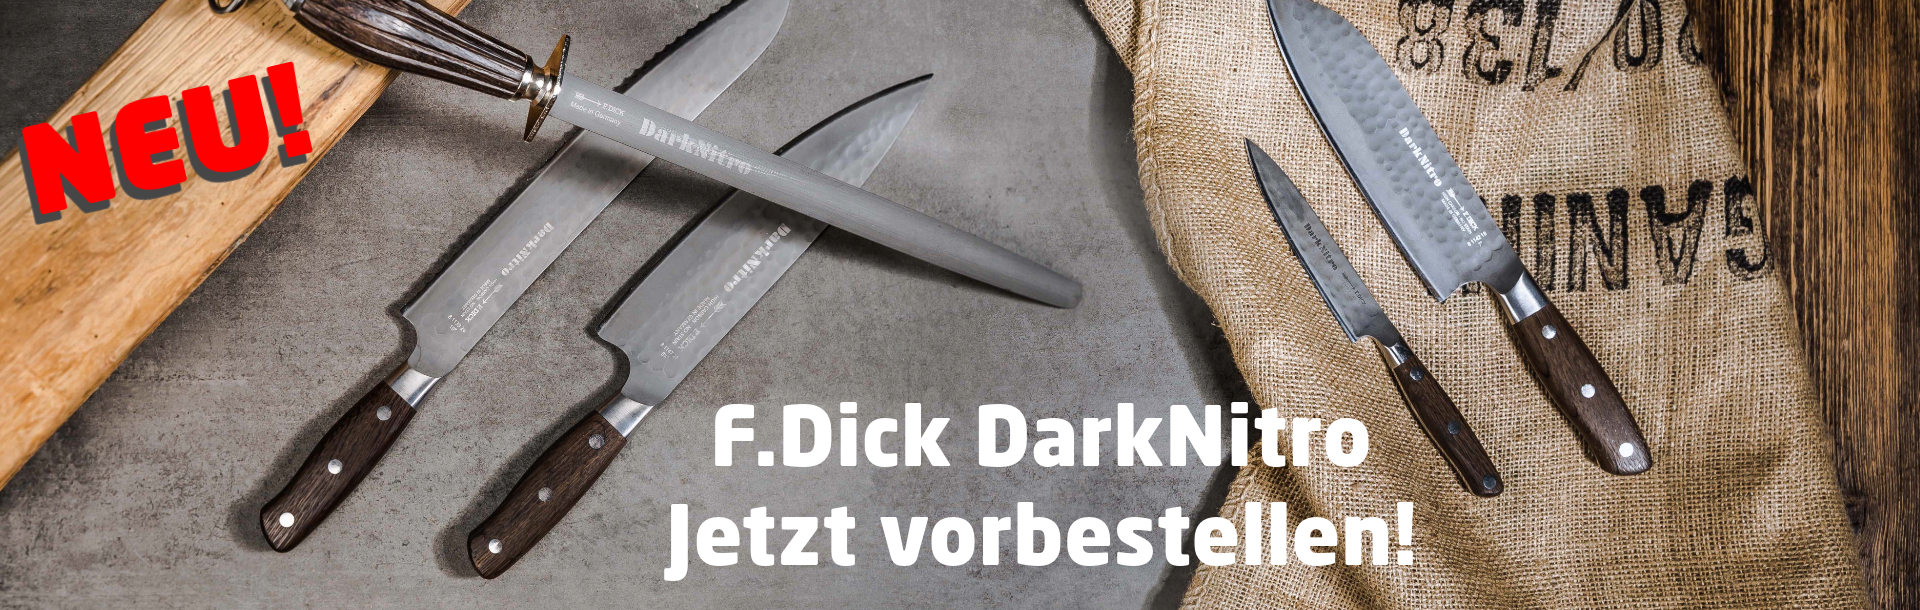 Jetzt F.Dick DarkNitro vorbestellen!